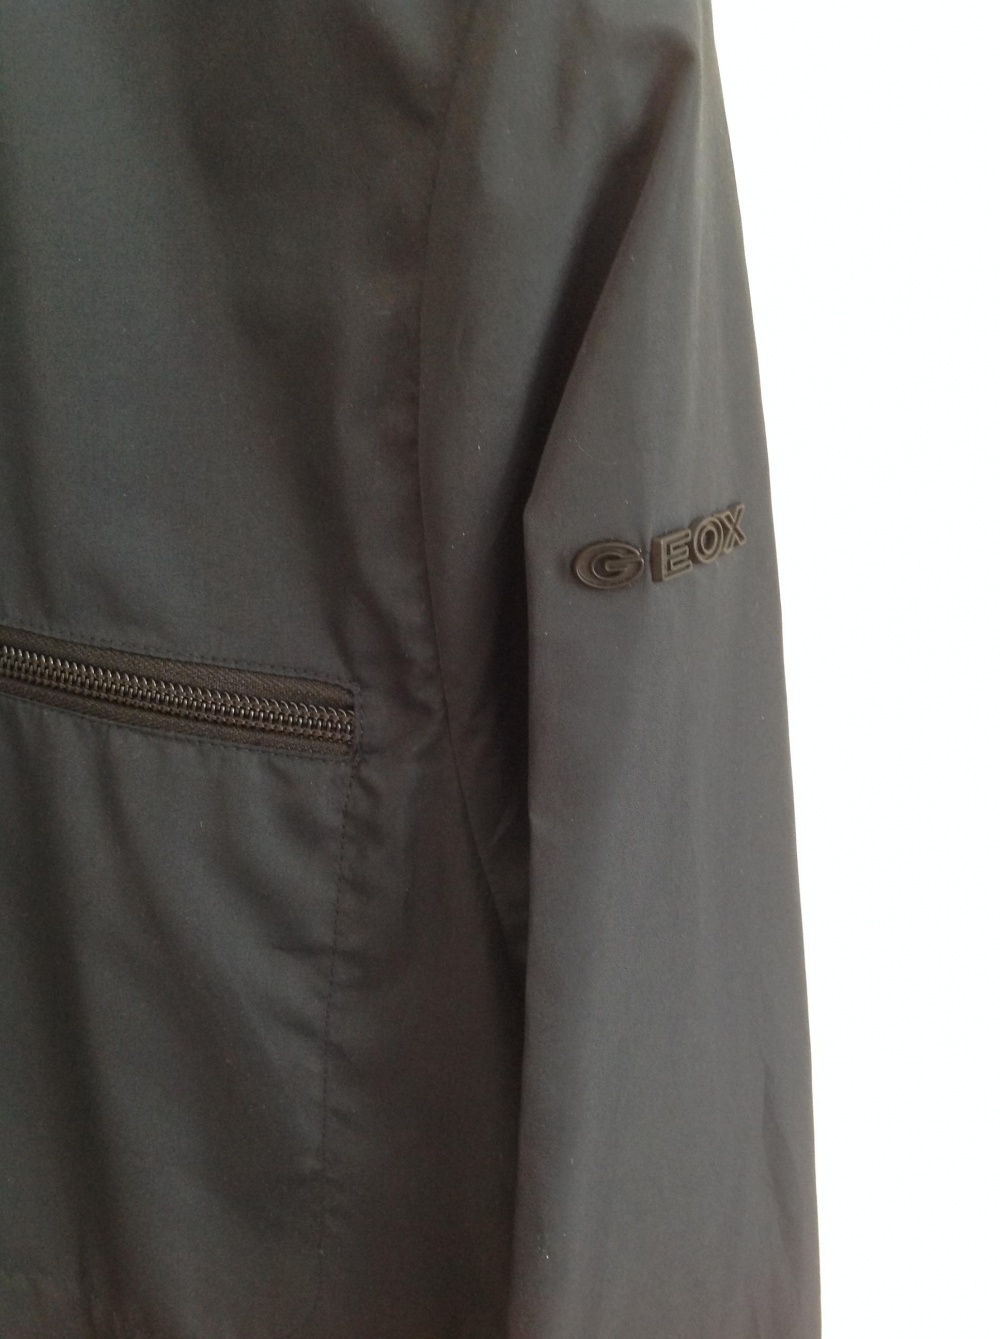 Куртка GEOX, размер 50IT, на 48-50-52